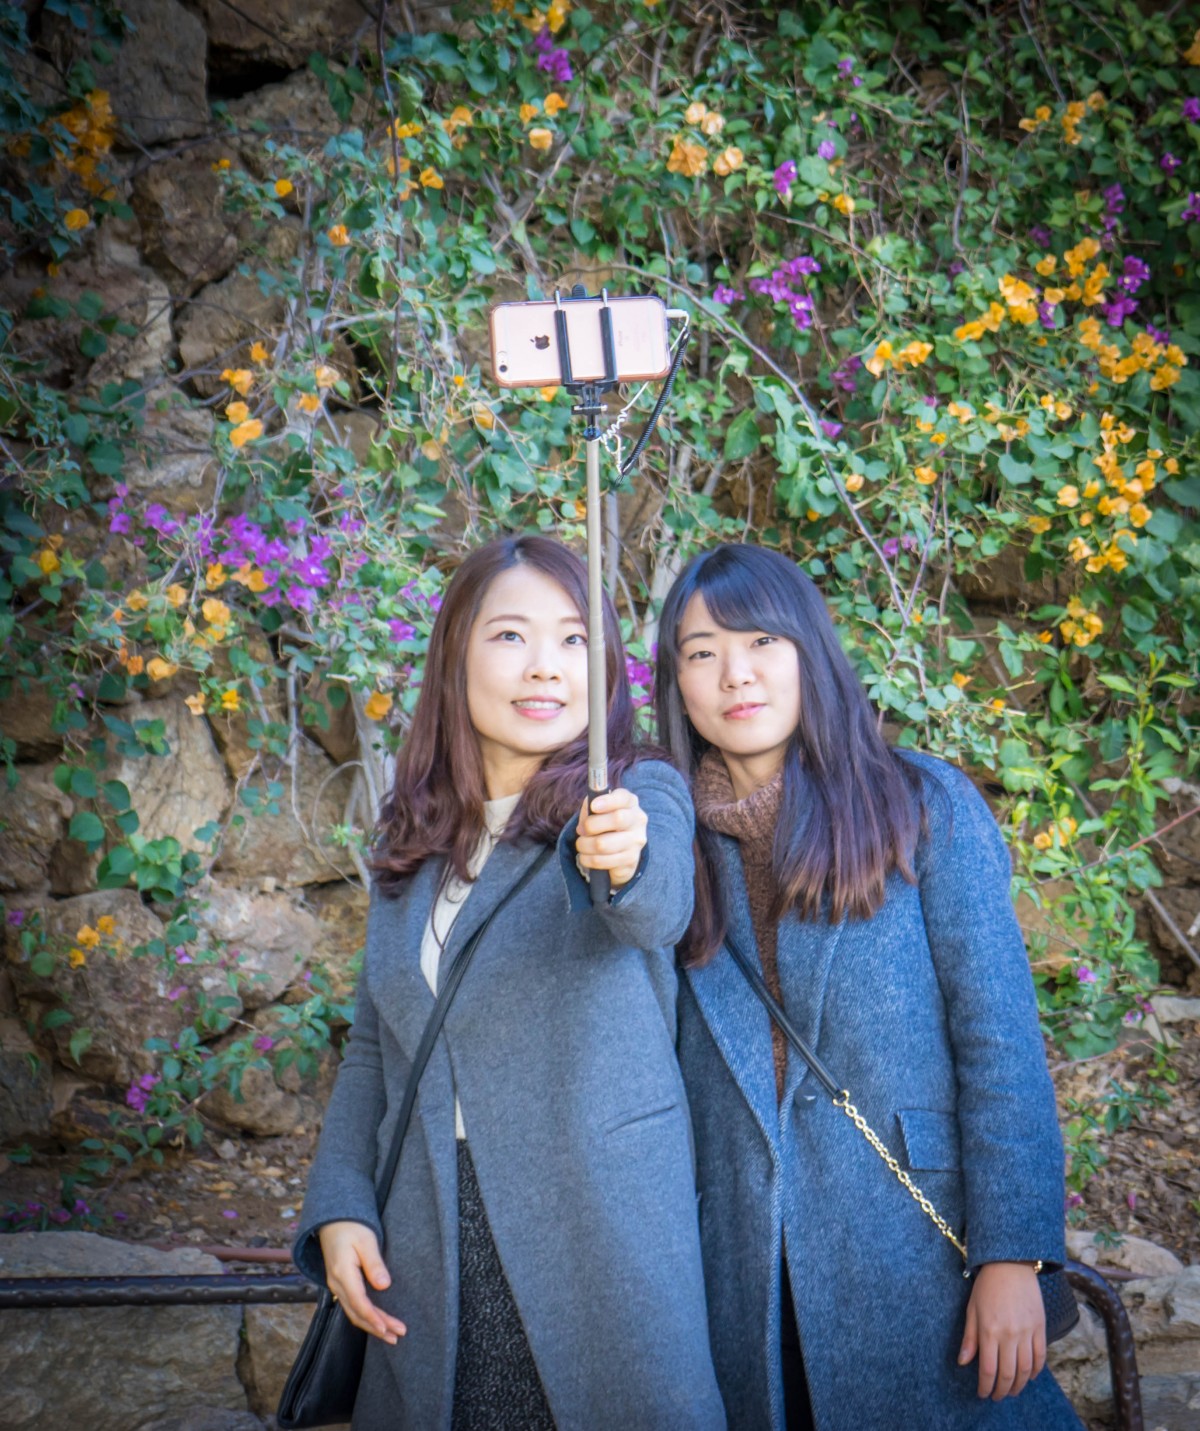 La imagen muestra a dos chicas de origen chino.